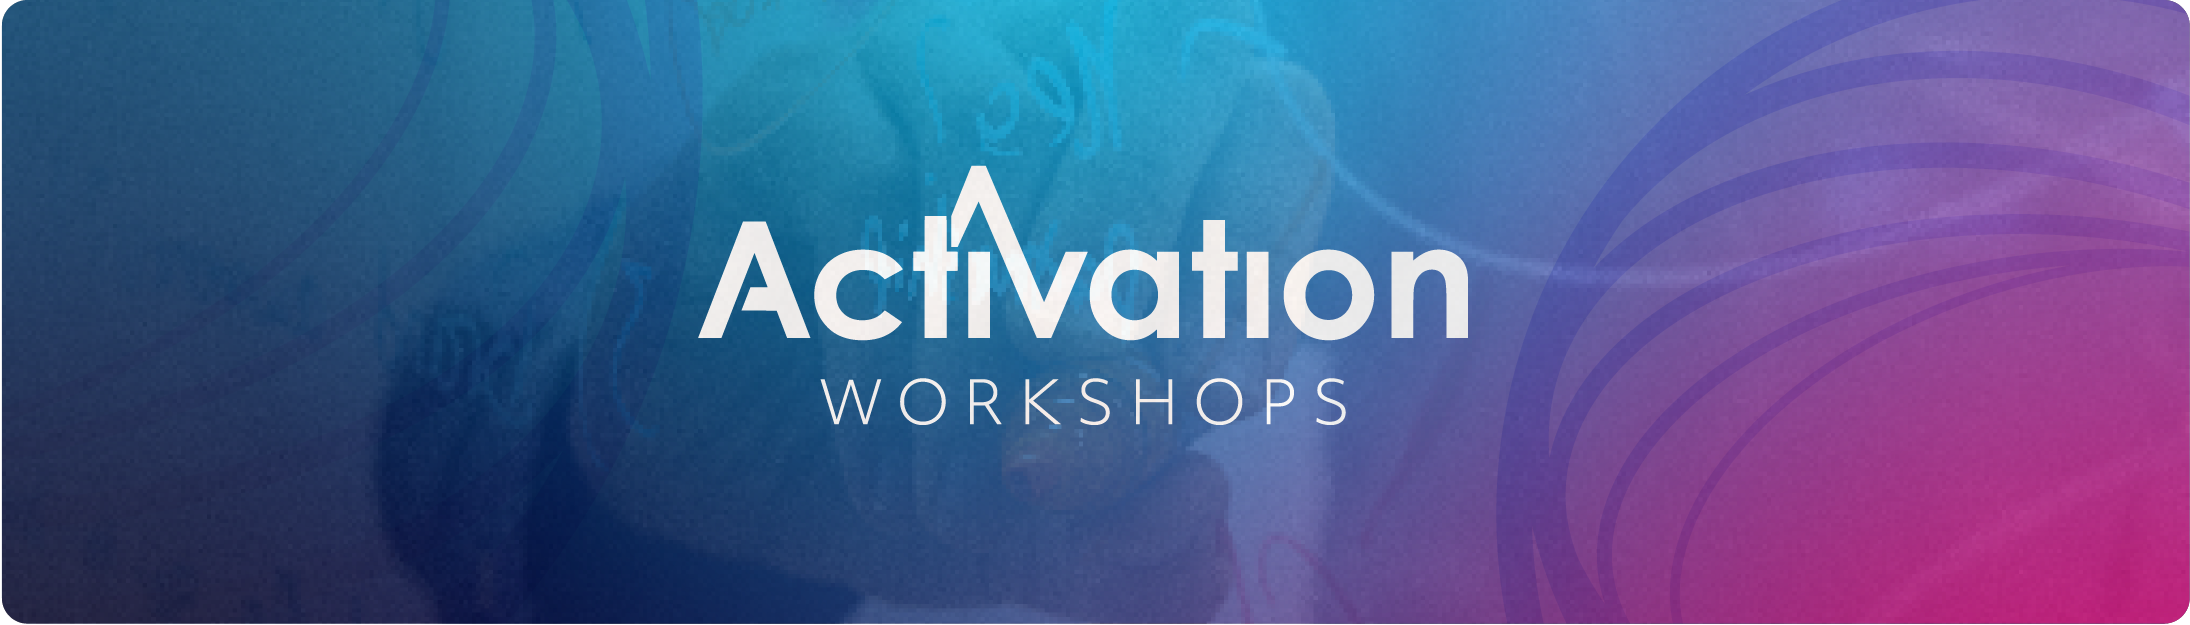 Activation workshops - Beyond Blue